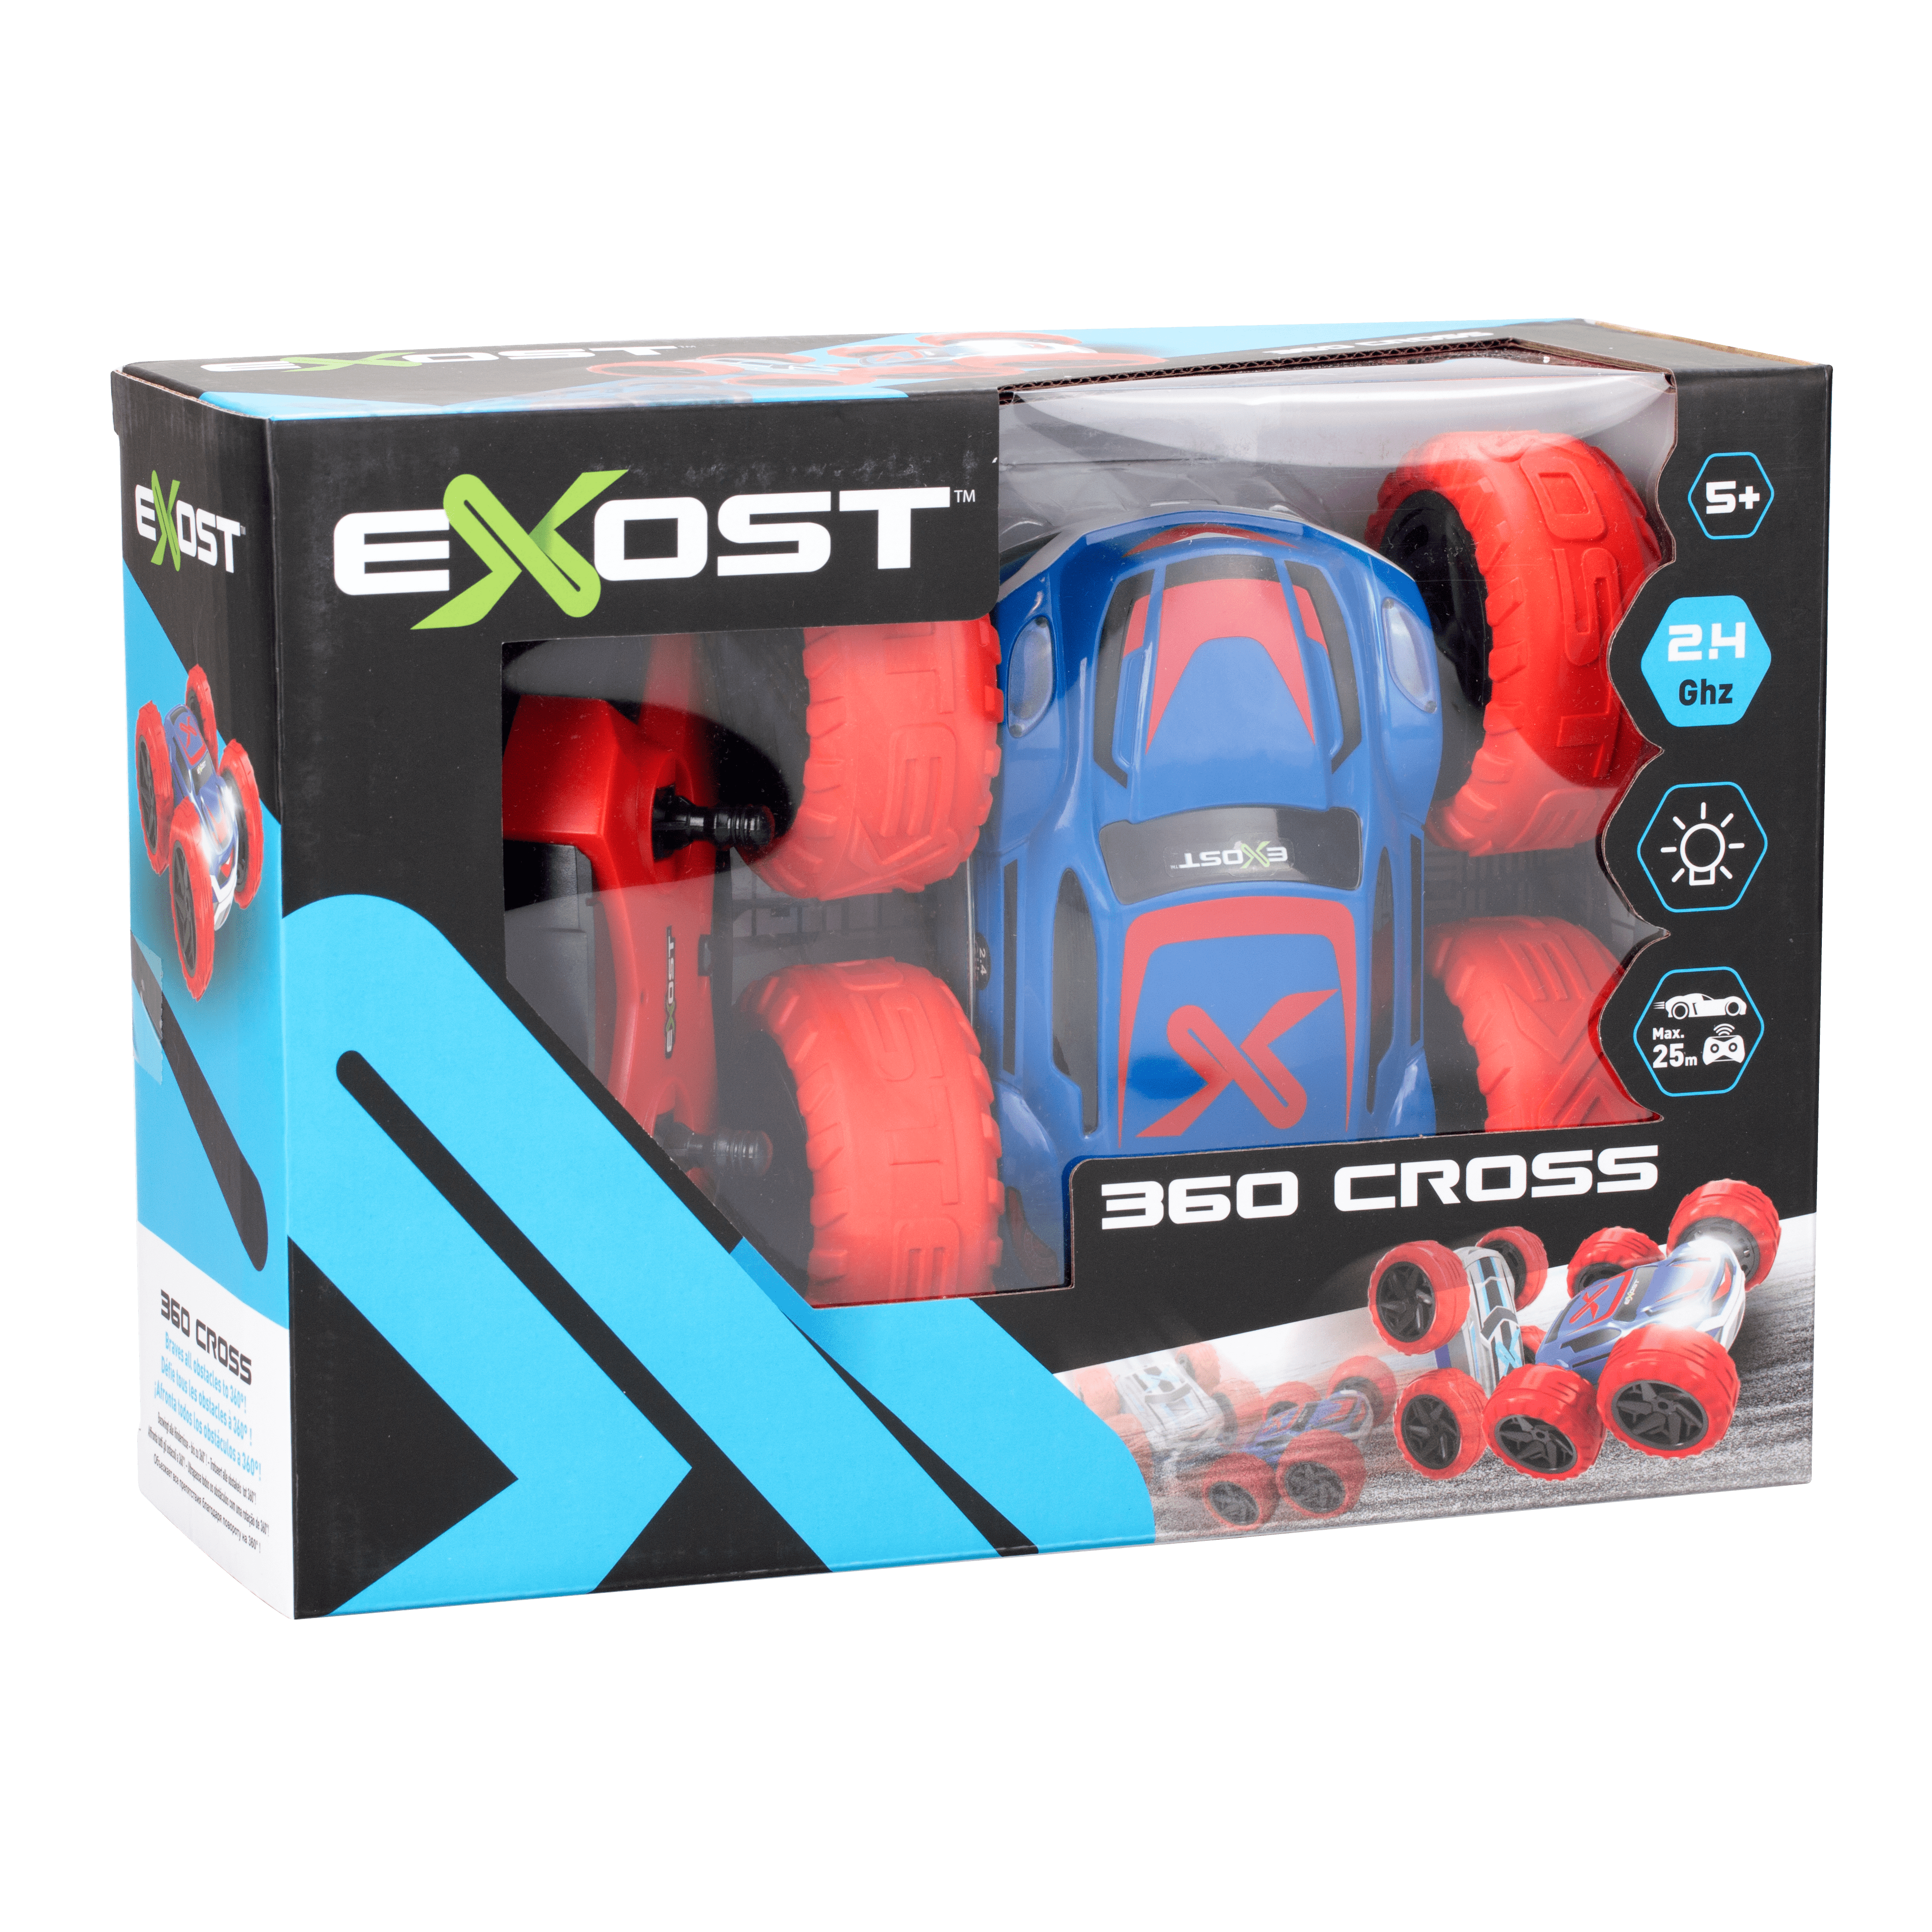 EXOST – Voiture télécommandée à batterie 360 CROSS – Silverlit